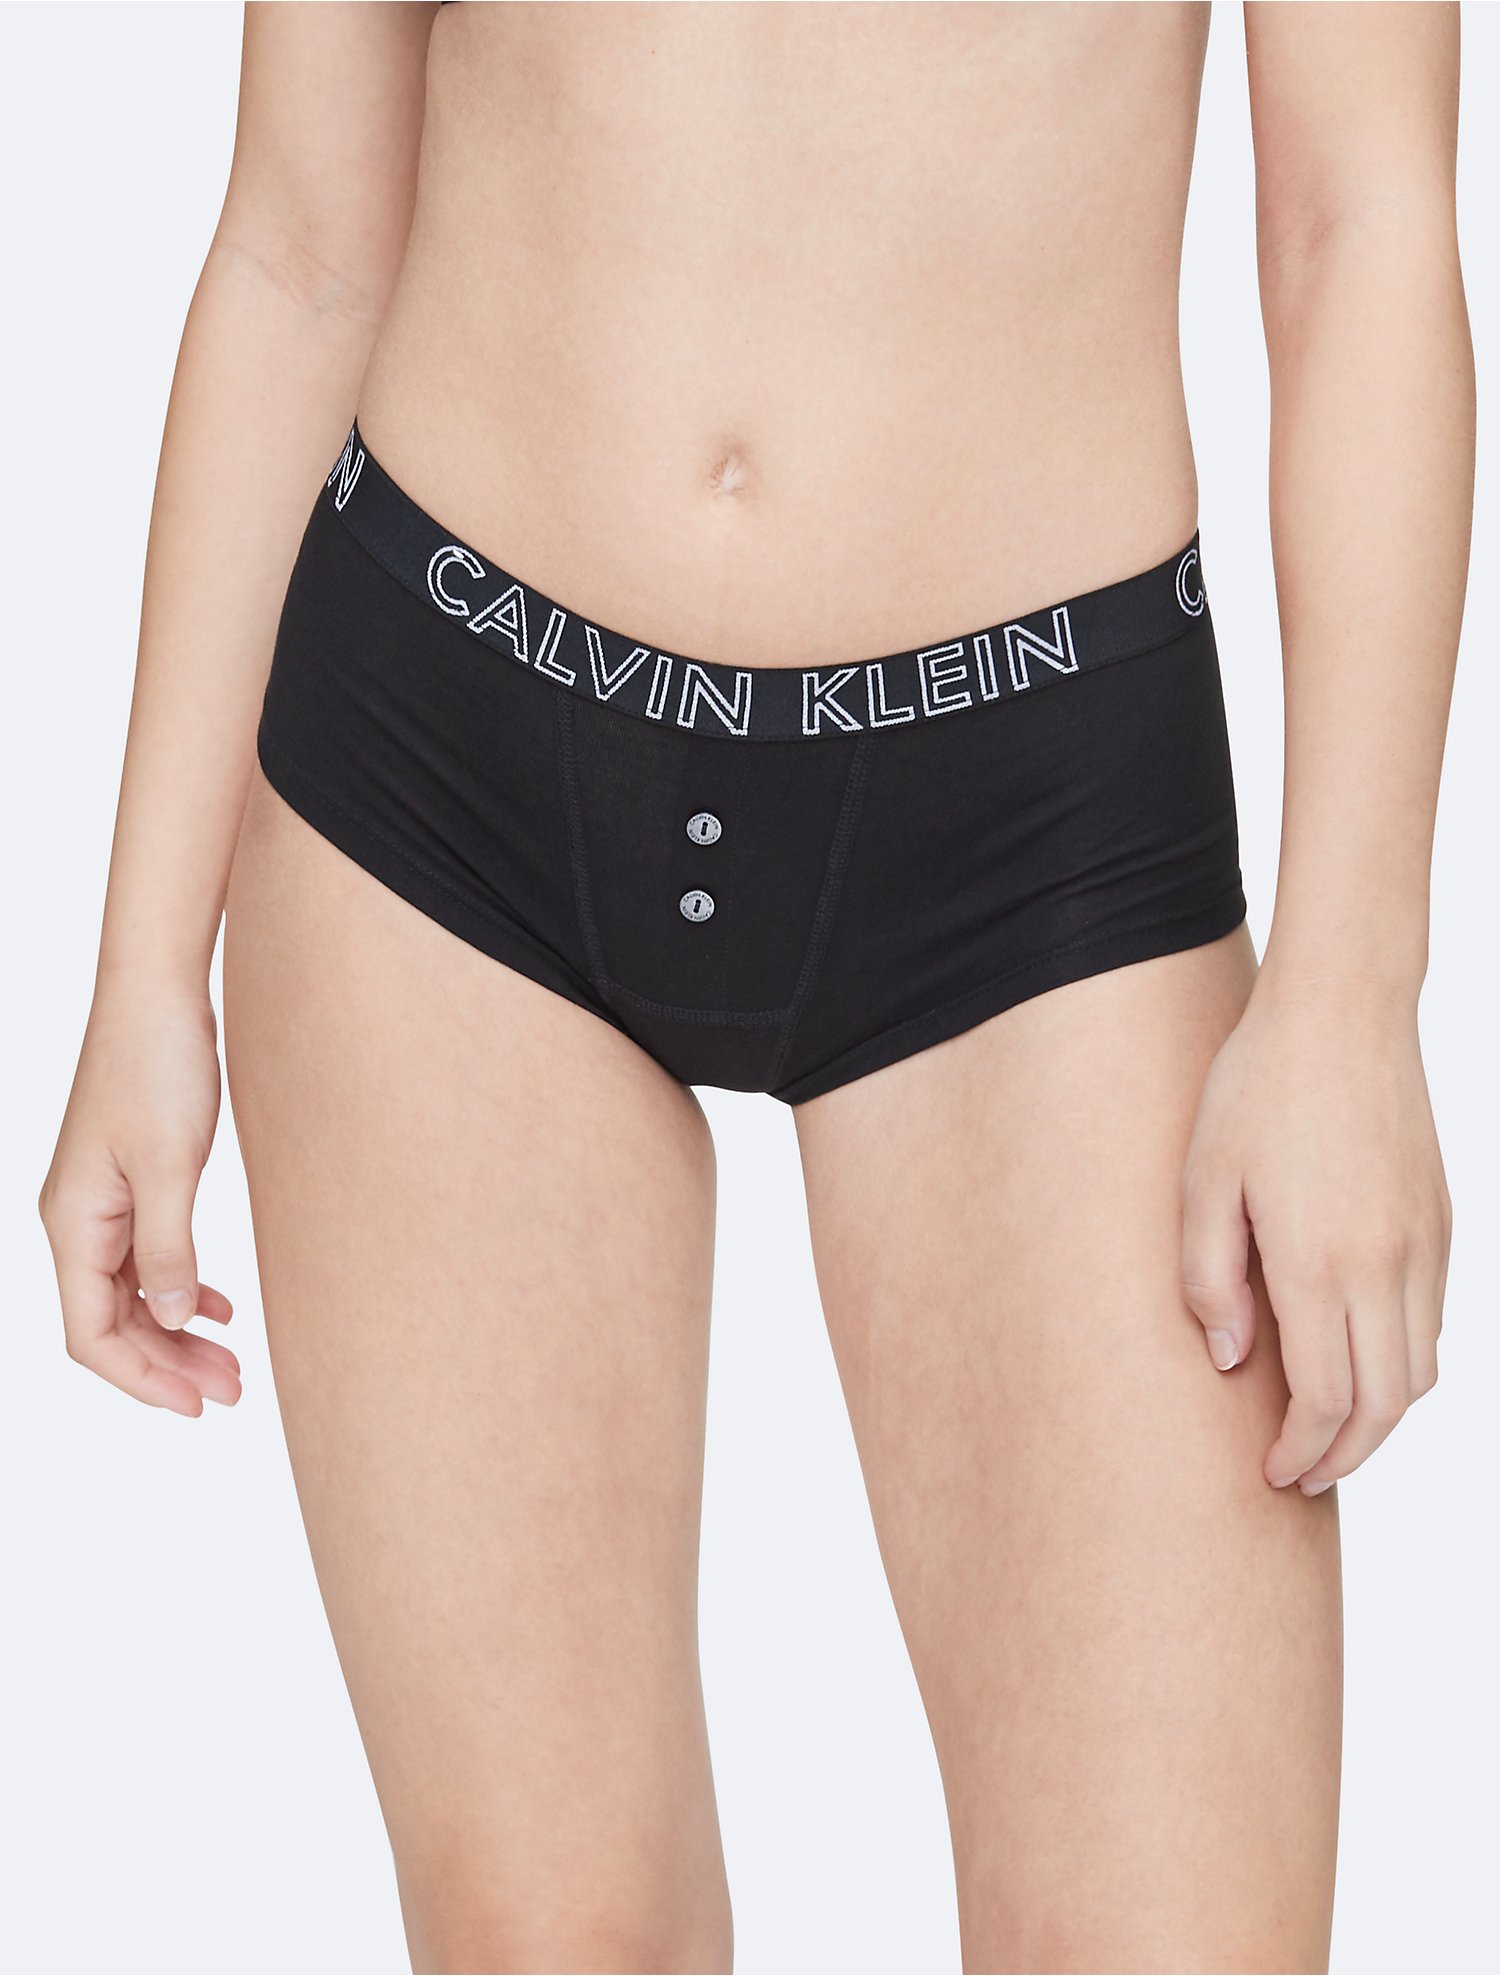 Descubrir 74+ imagen calvin klein boy shorts underwear